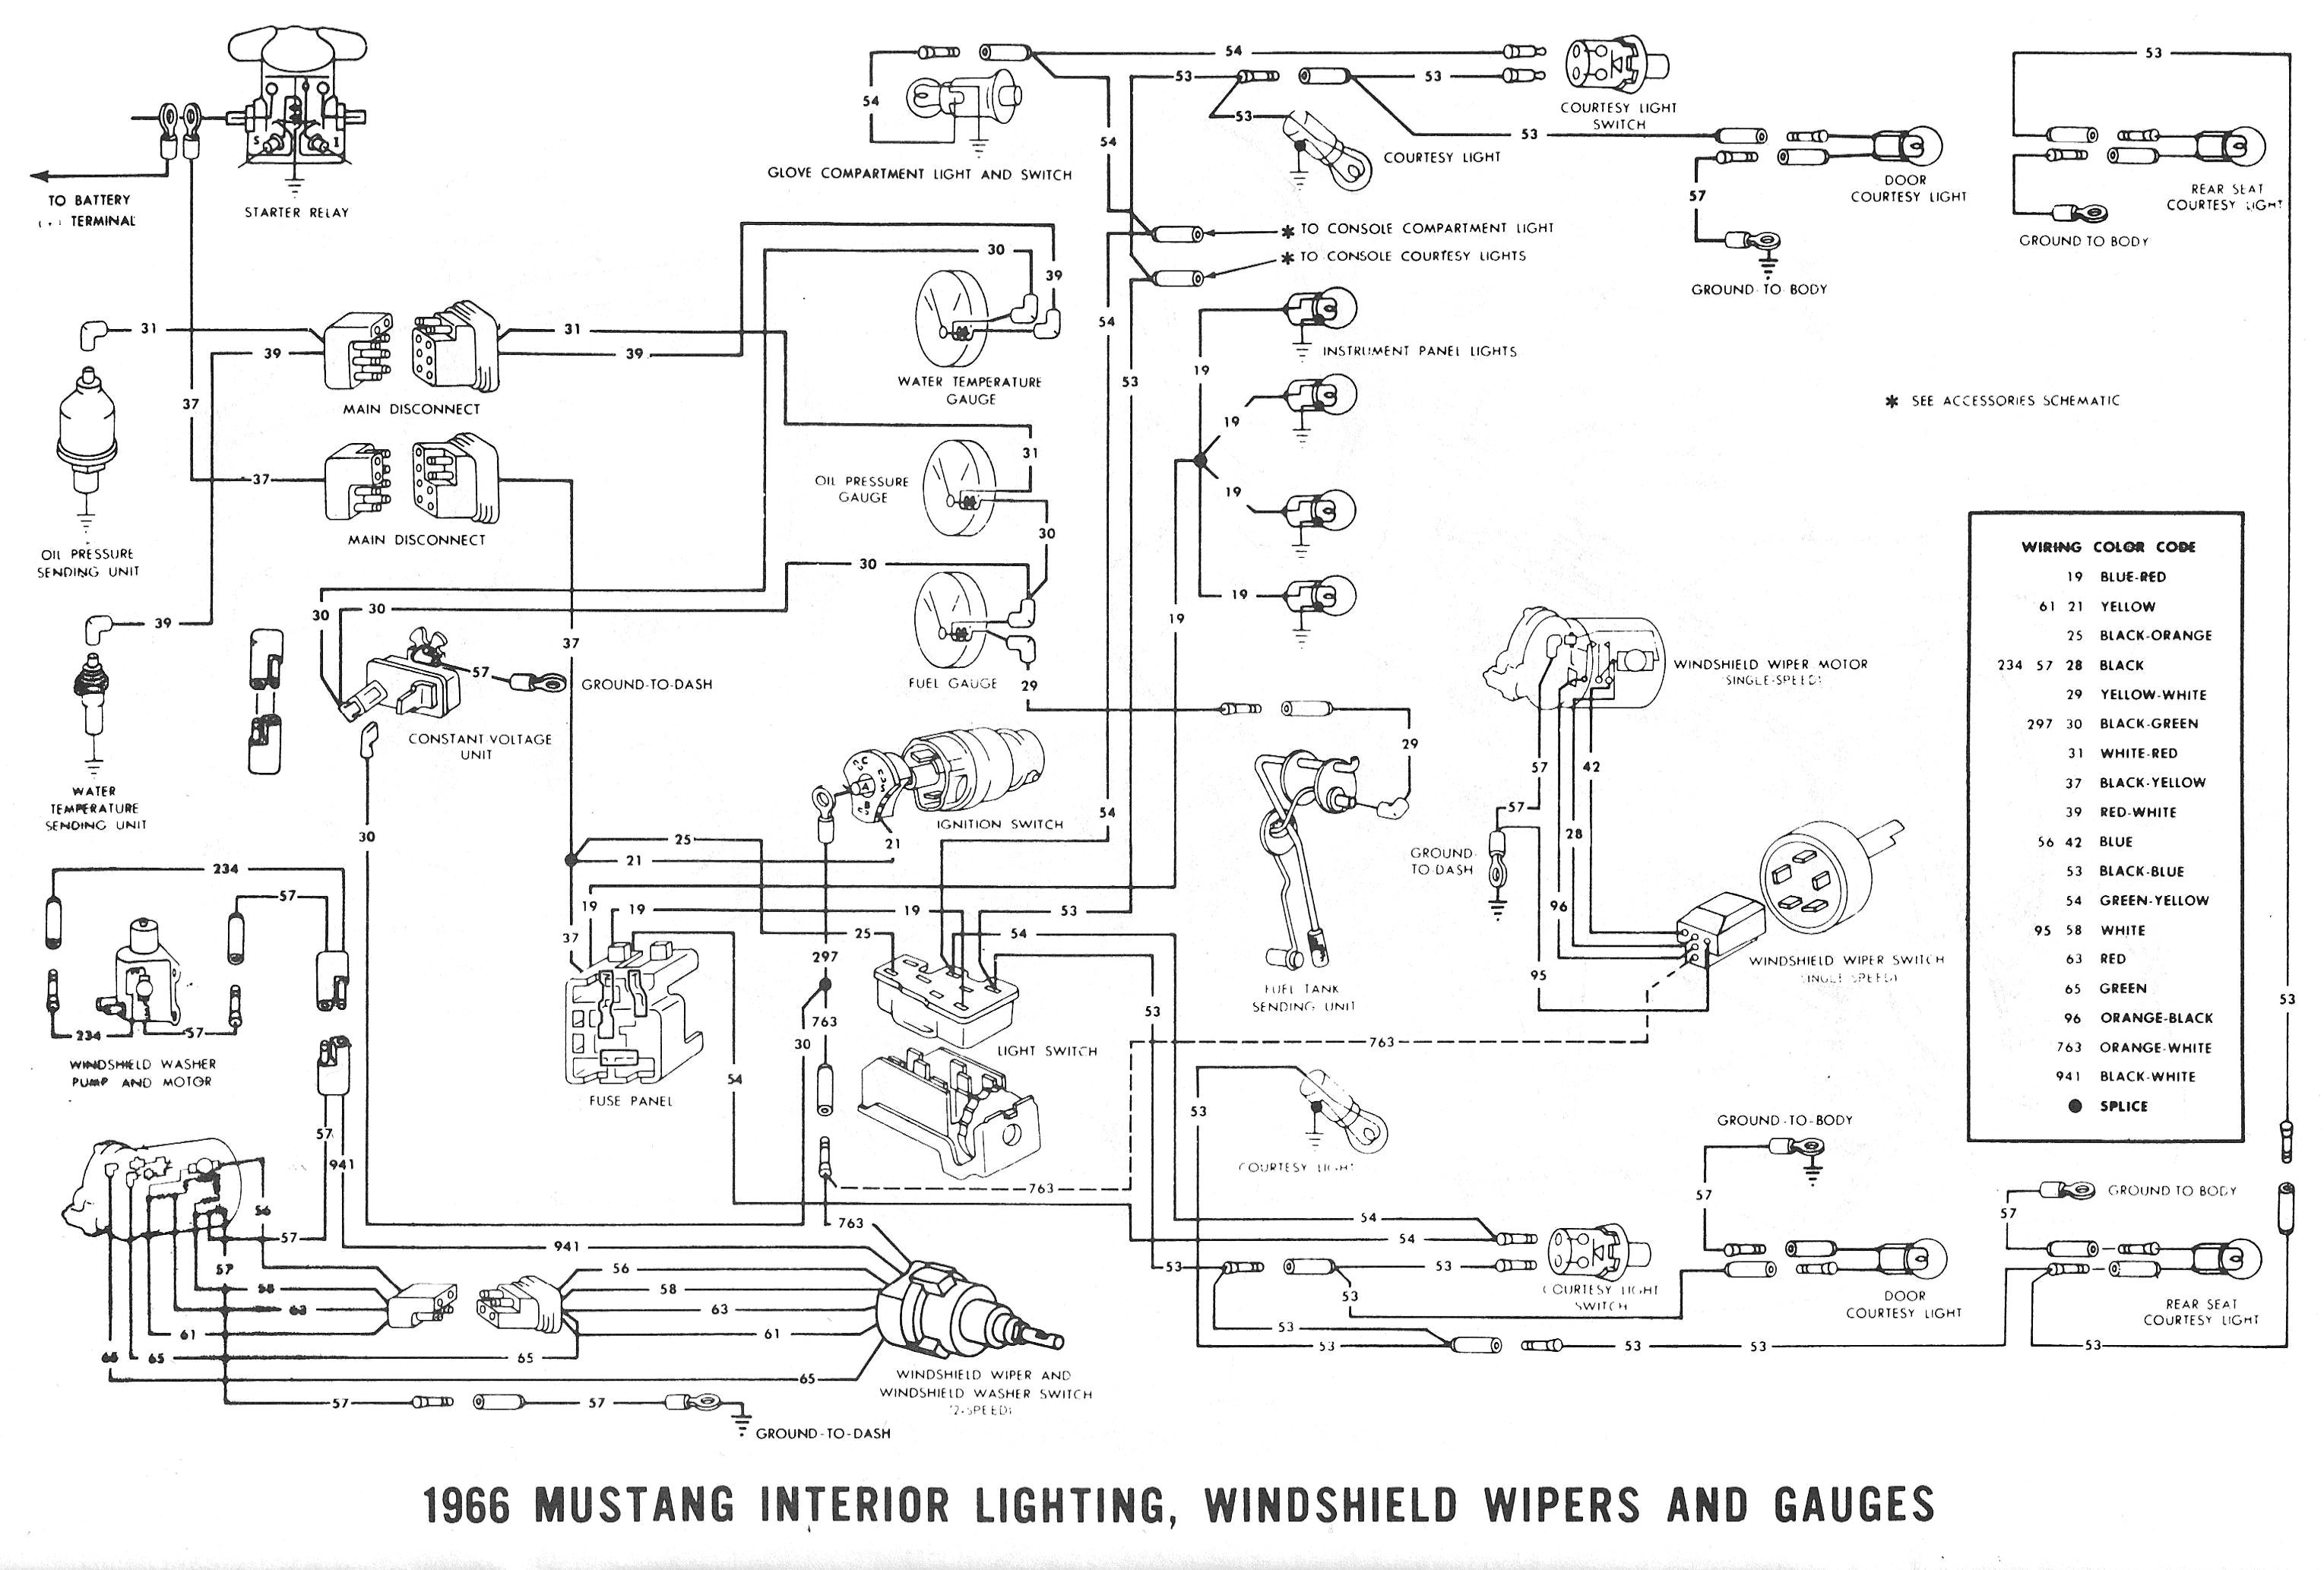 Mustang Guitar Wiring Diagram New 1966 Mustang Wiring Diagram New 1966 ford Mustang Wiring Diagram